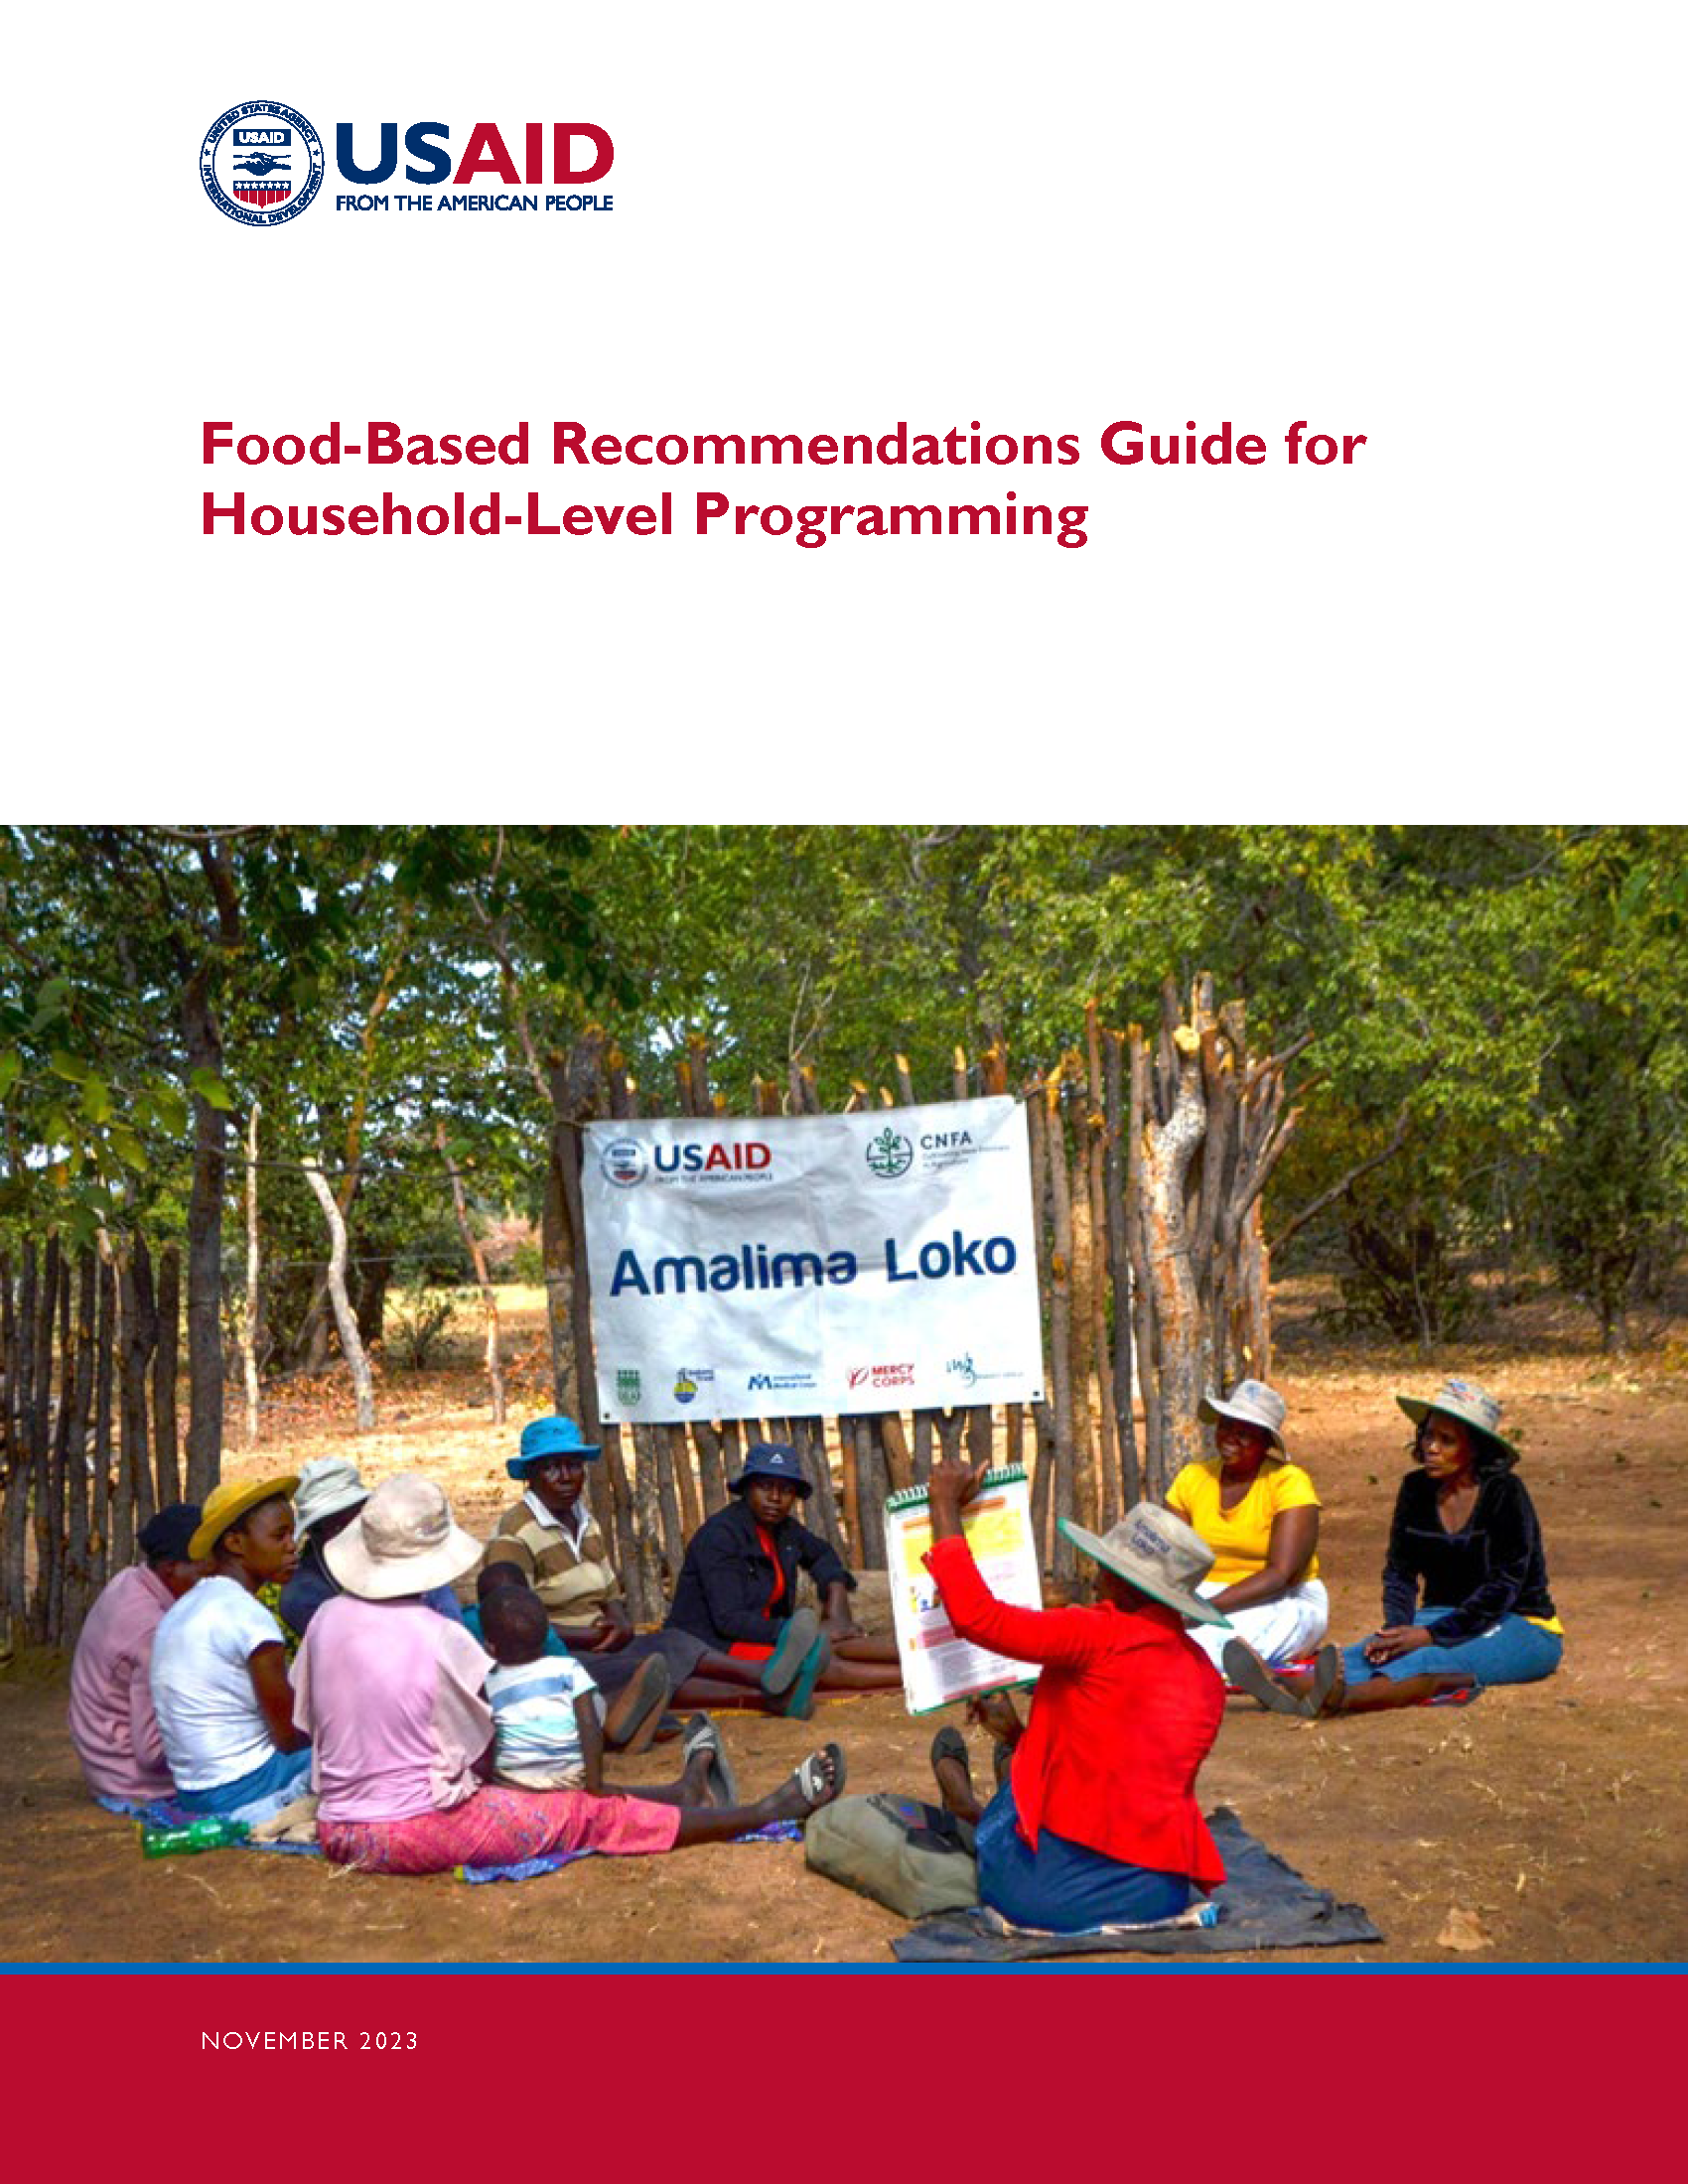 Page de couverture du Guide de recommandations basées sur l'alimentation pour les programmes au niveau des ménages